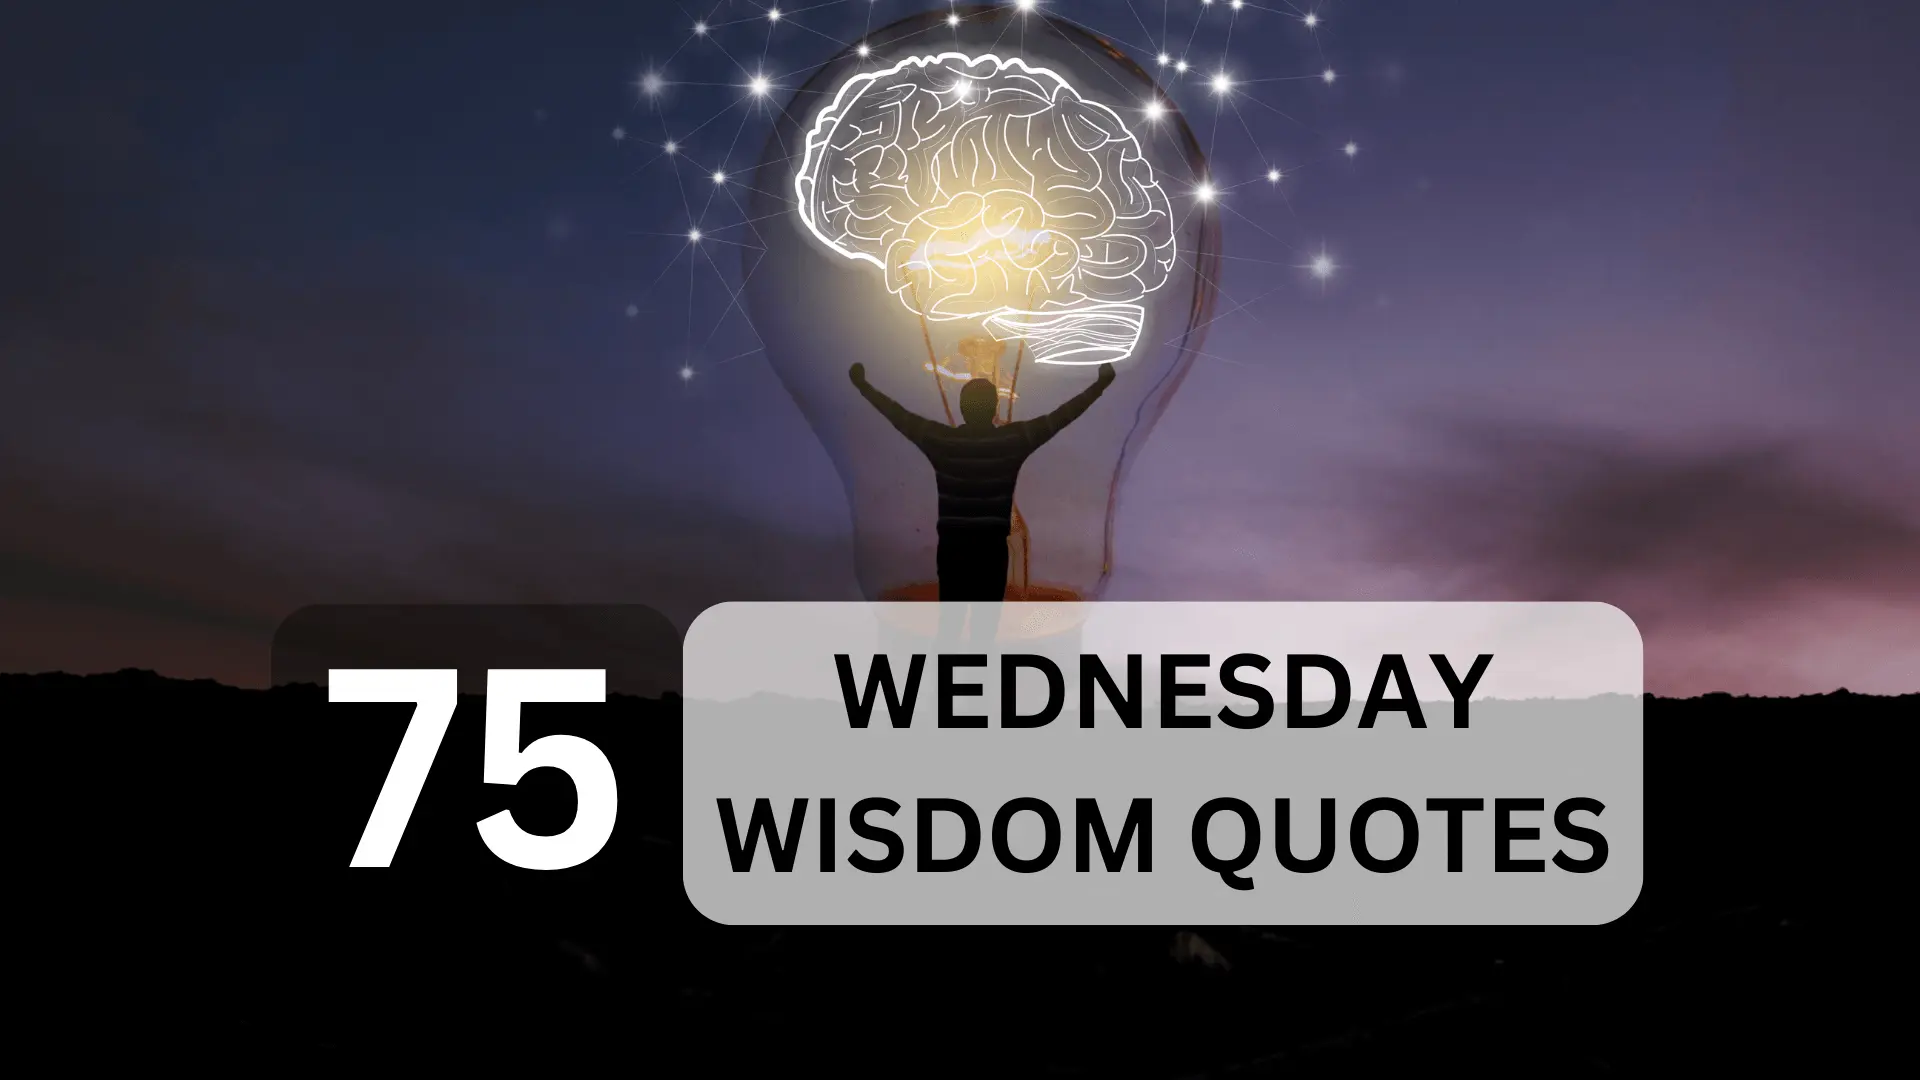 Wednesday wisdom quotes